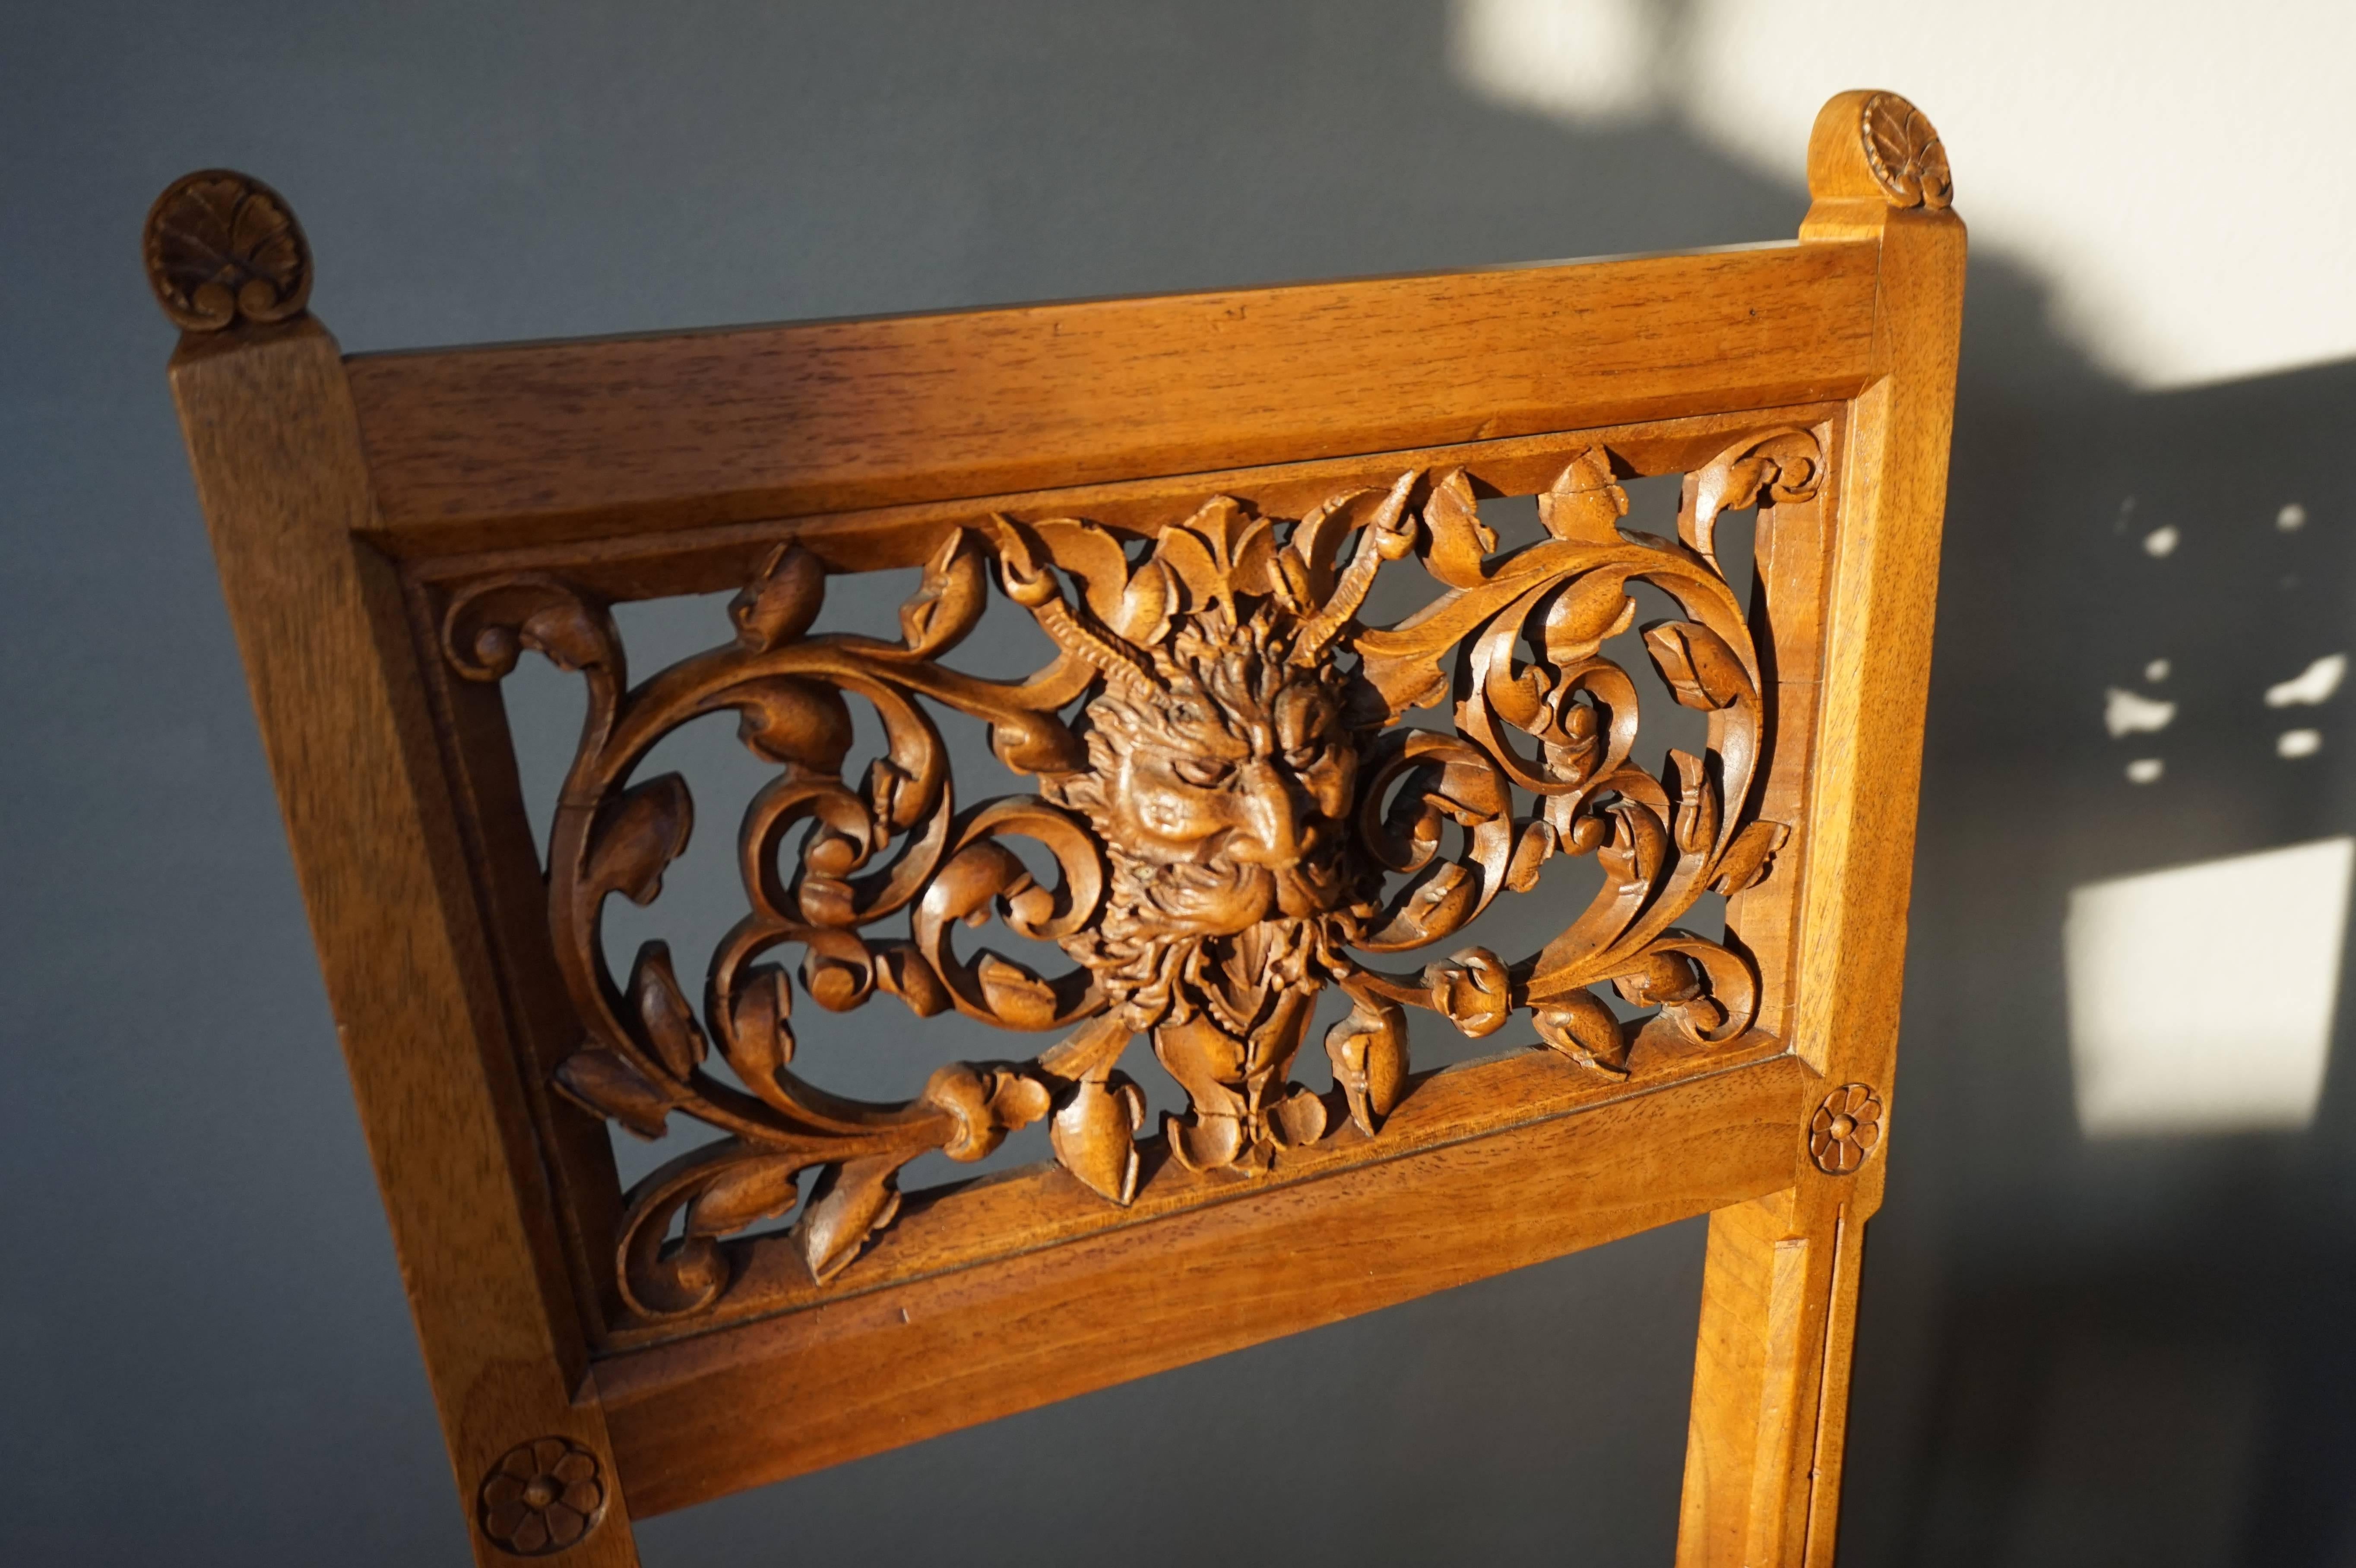 Unglaublich gut gearbeiteter antiker Stuhl mit den feinsten Details.

Dieser kleine und einzigartige Damenstuhl aus den späten 1800er Jahren ist in schönem und originalem Zustand. Dieser Pariser Stuhl ist so stabil wie an dem Tag, an dem er gemacht